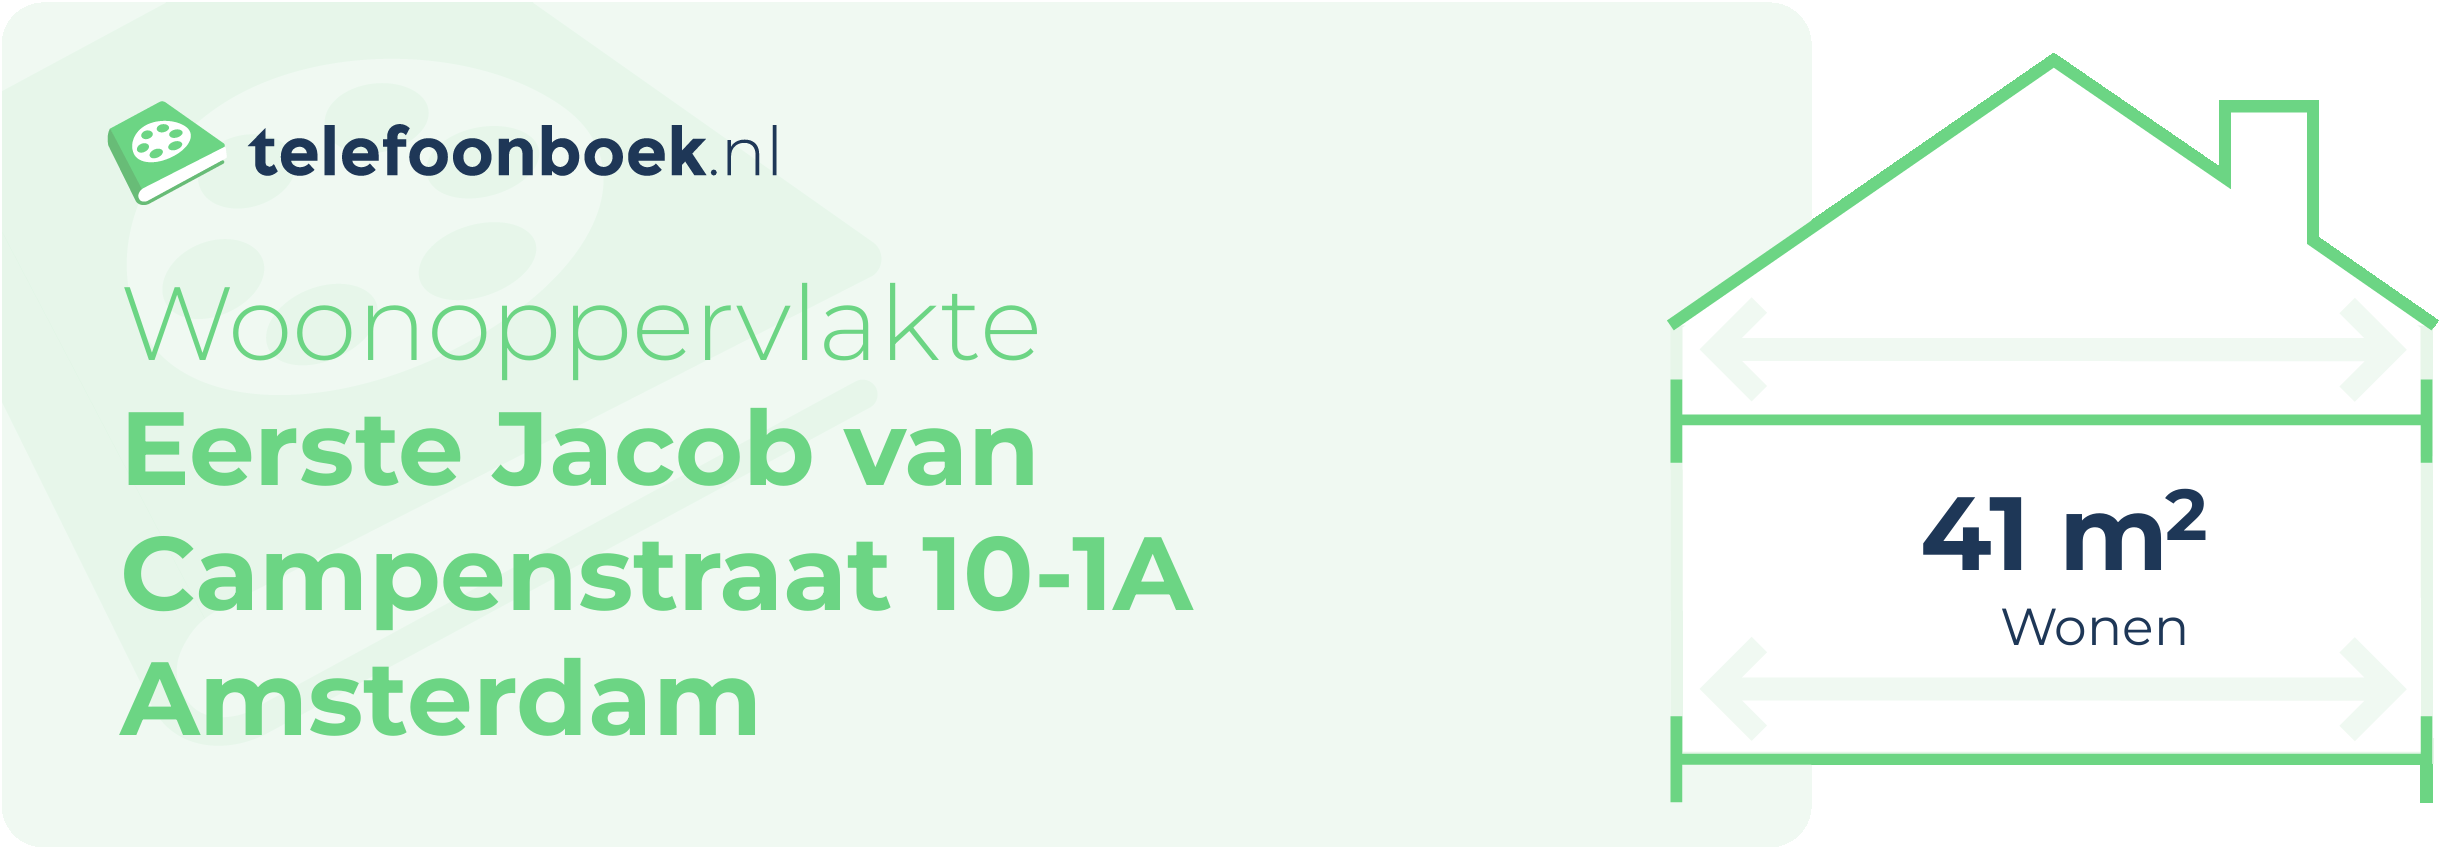 Woonoppervlakte Eerste Jacob Van Campenstraat 10-1A Amsterdam